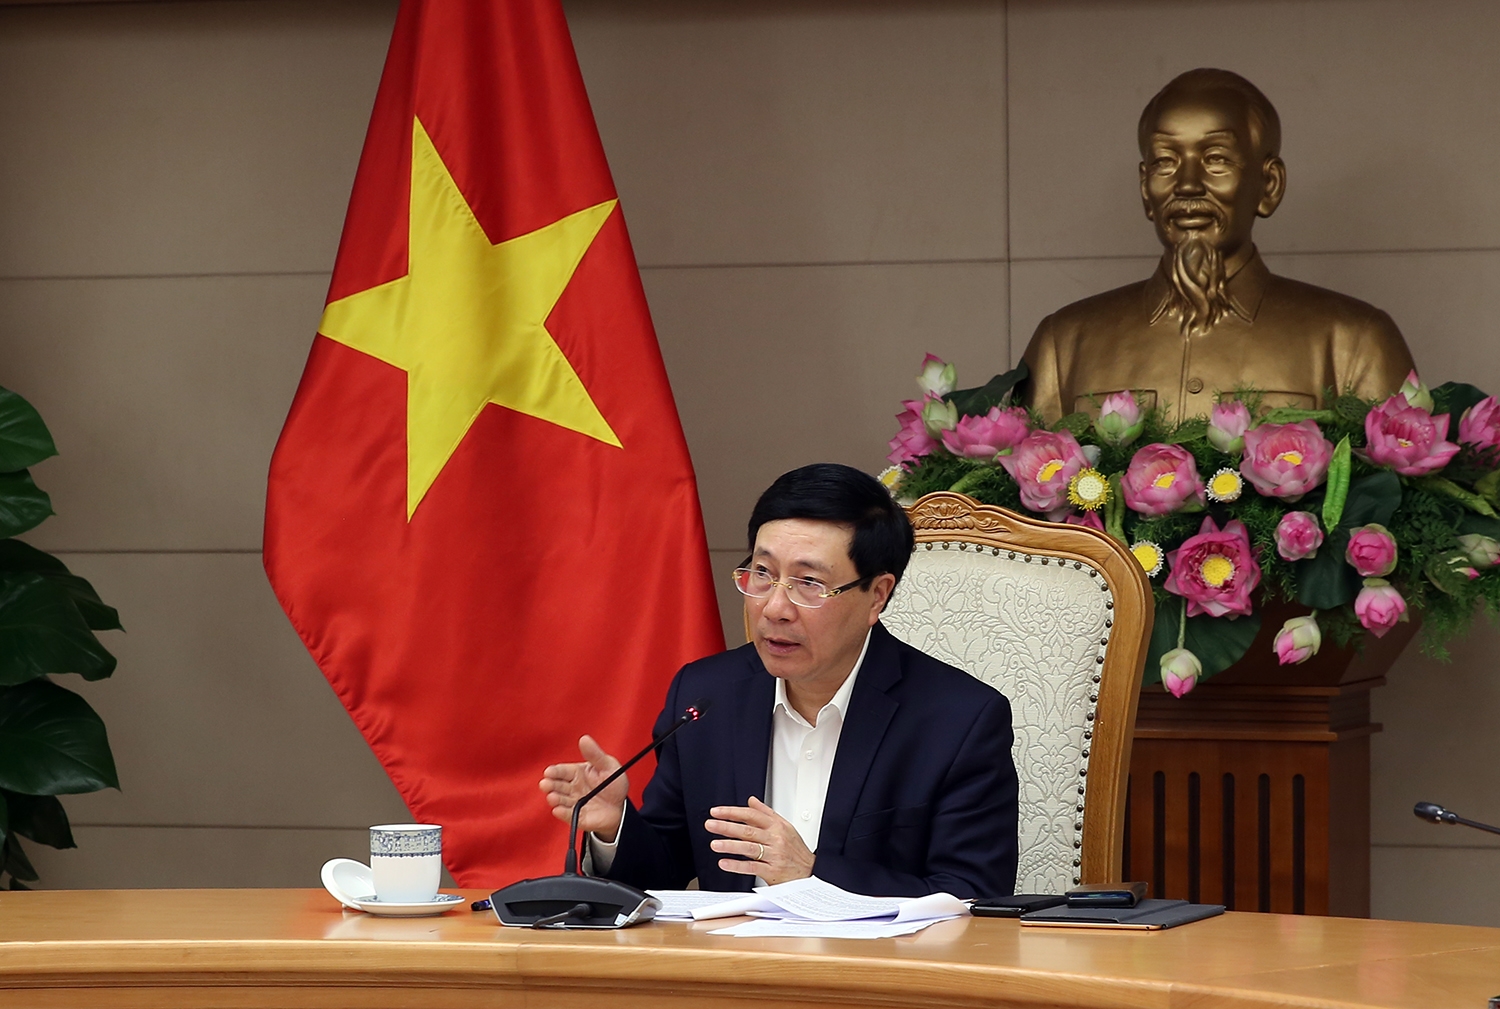 Phó Thủ tướng Phạm Bình Minh cho rằng, việc khôi phục các chuyến bay thương mại quốc tế là yêu cầu của thực tiễn trong tình hình bình thường mới, đặc biệt trước nhu cầu đi lại tăng cao trong thời điểm cuối năm. Ảnh: VGP/Hải Minh